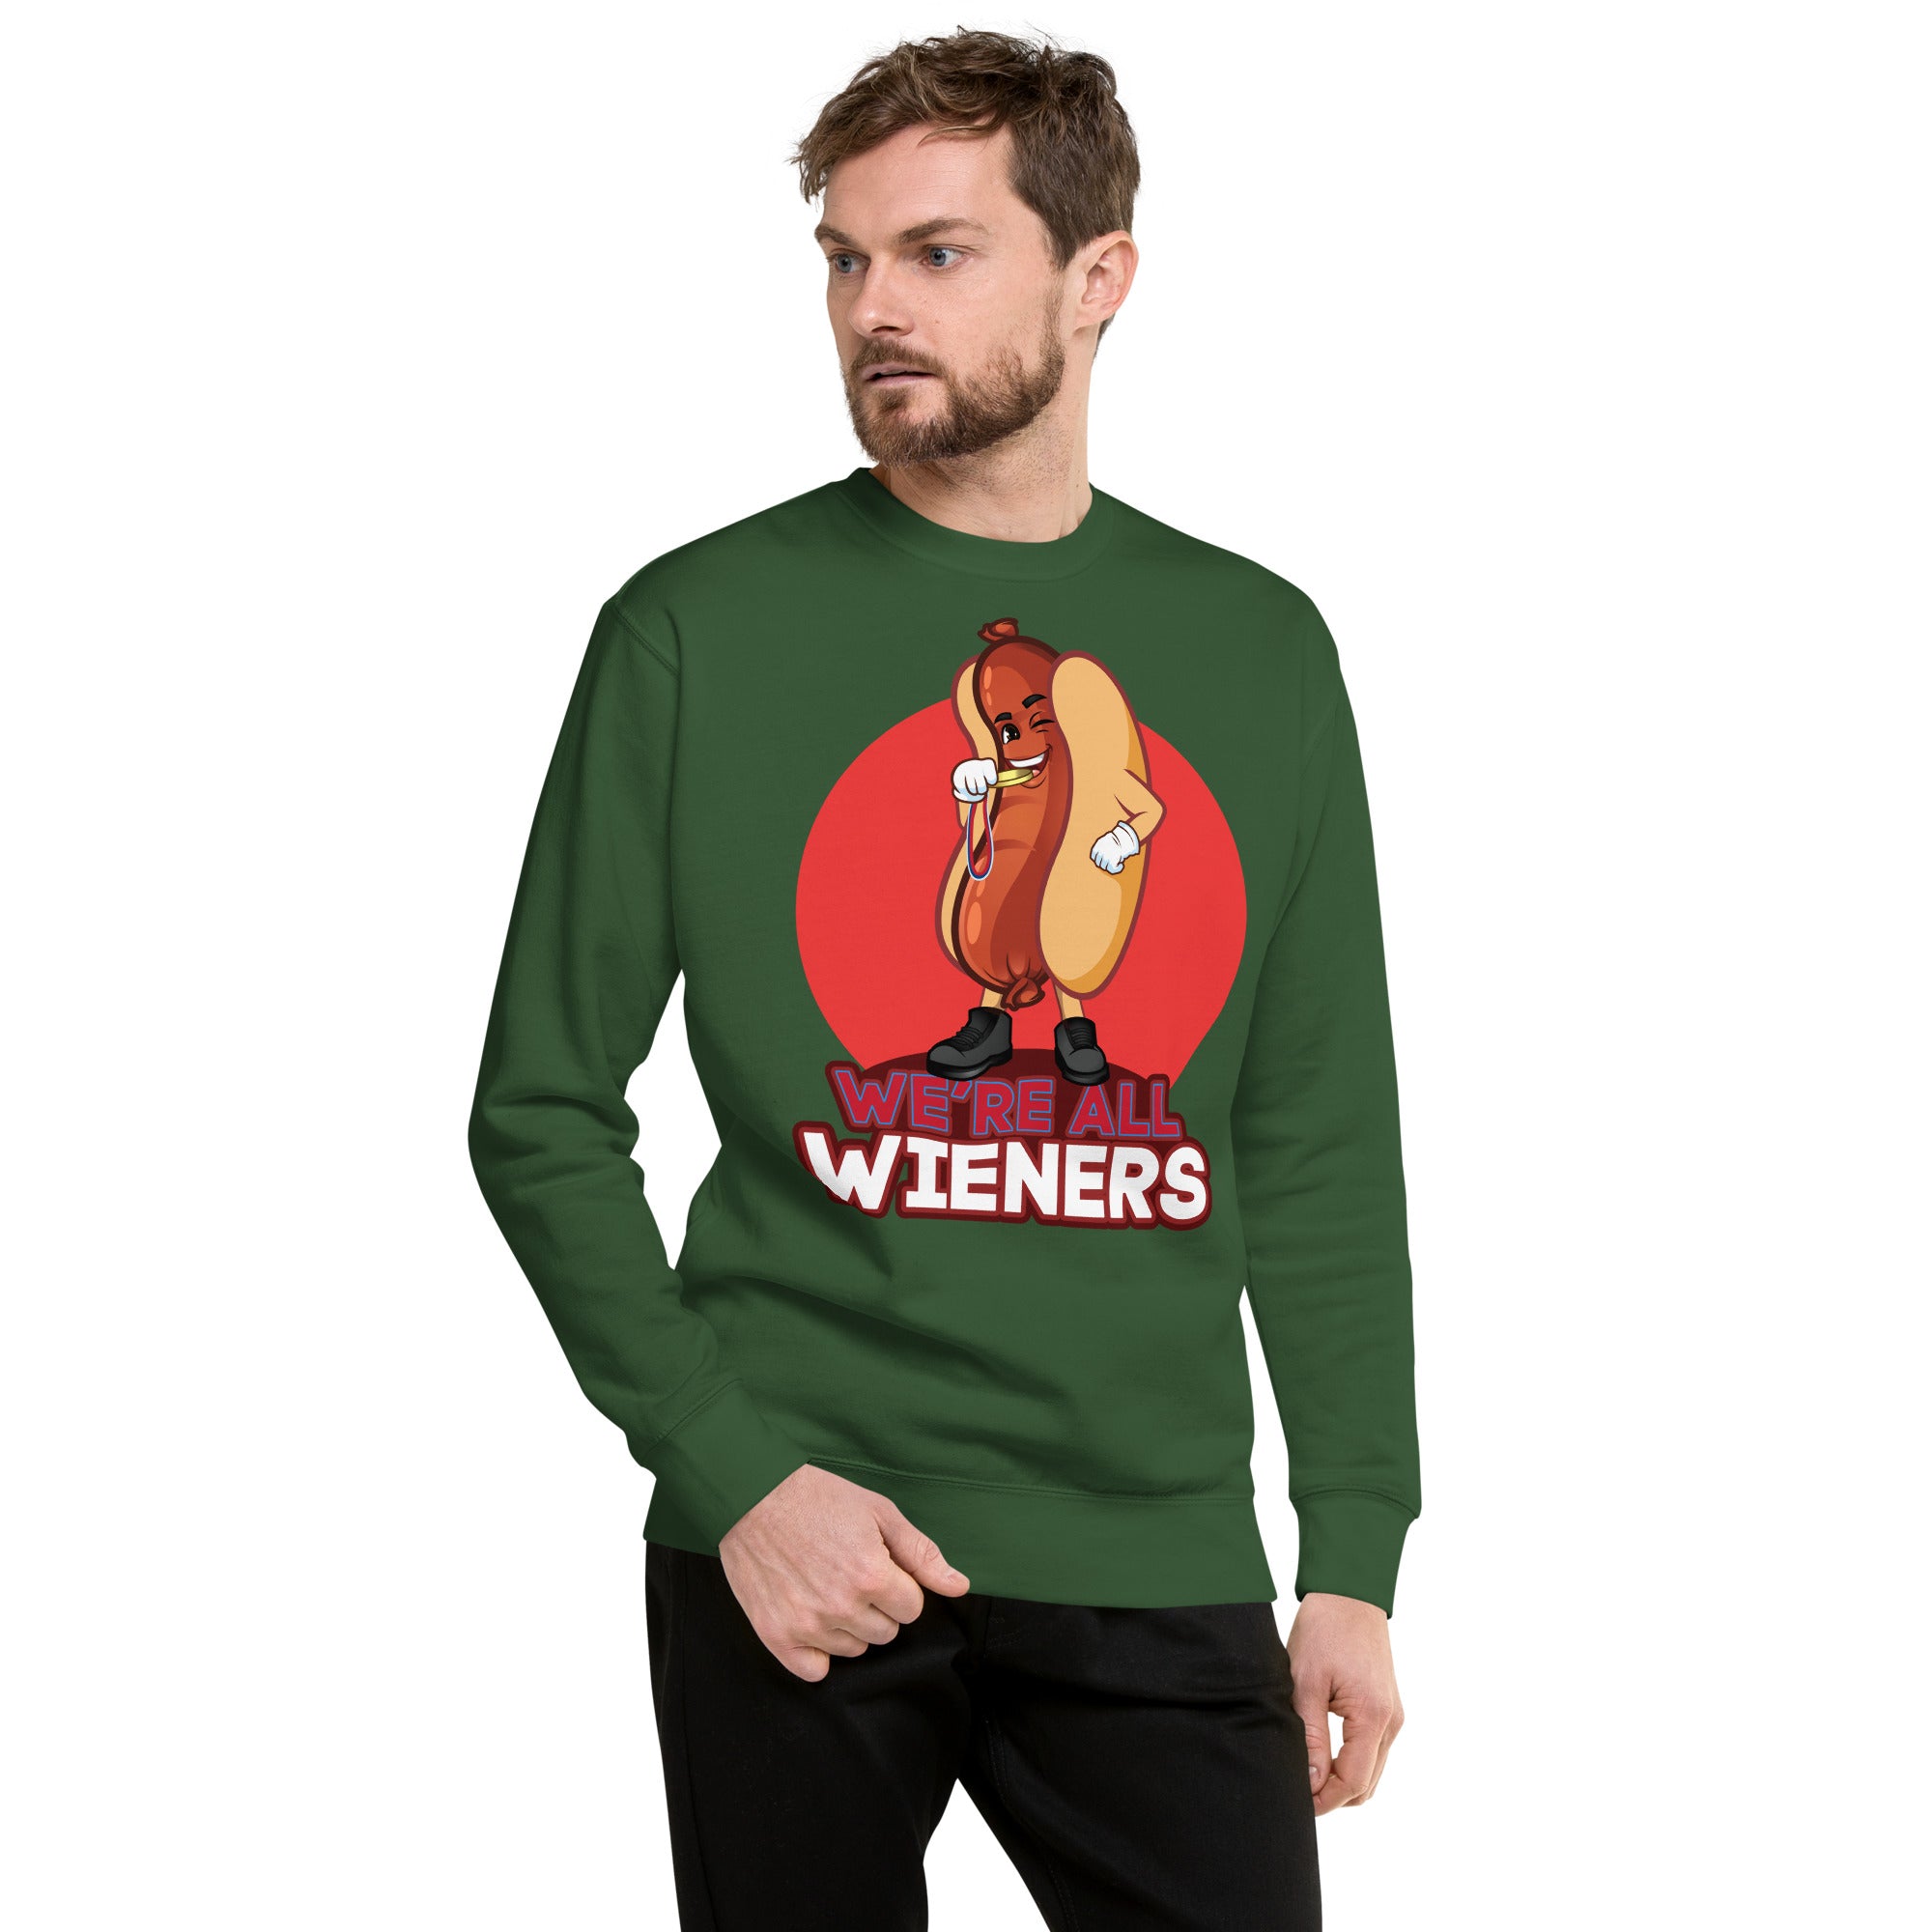 We're All Wiener's Men's Original Crew Sweatshirt - Red